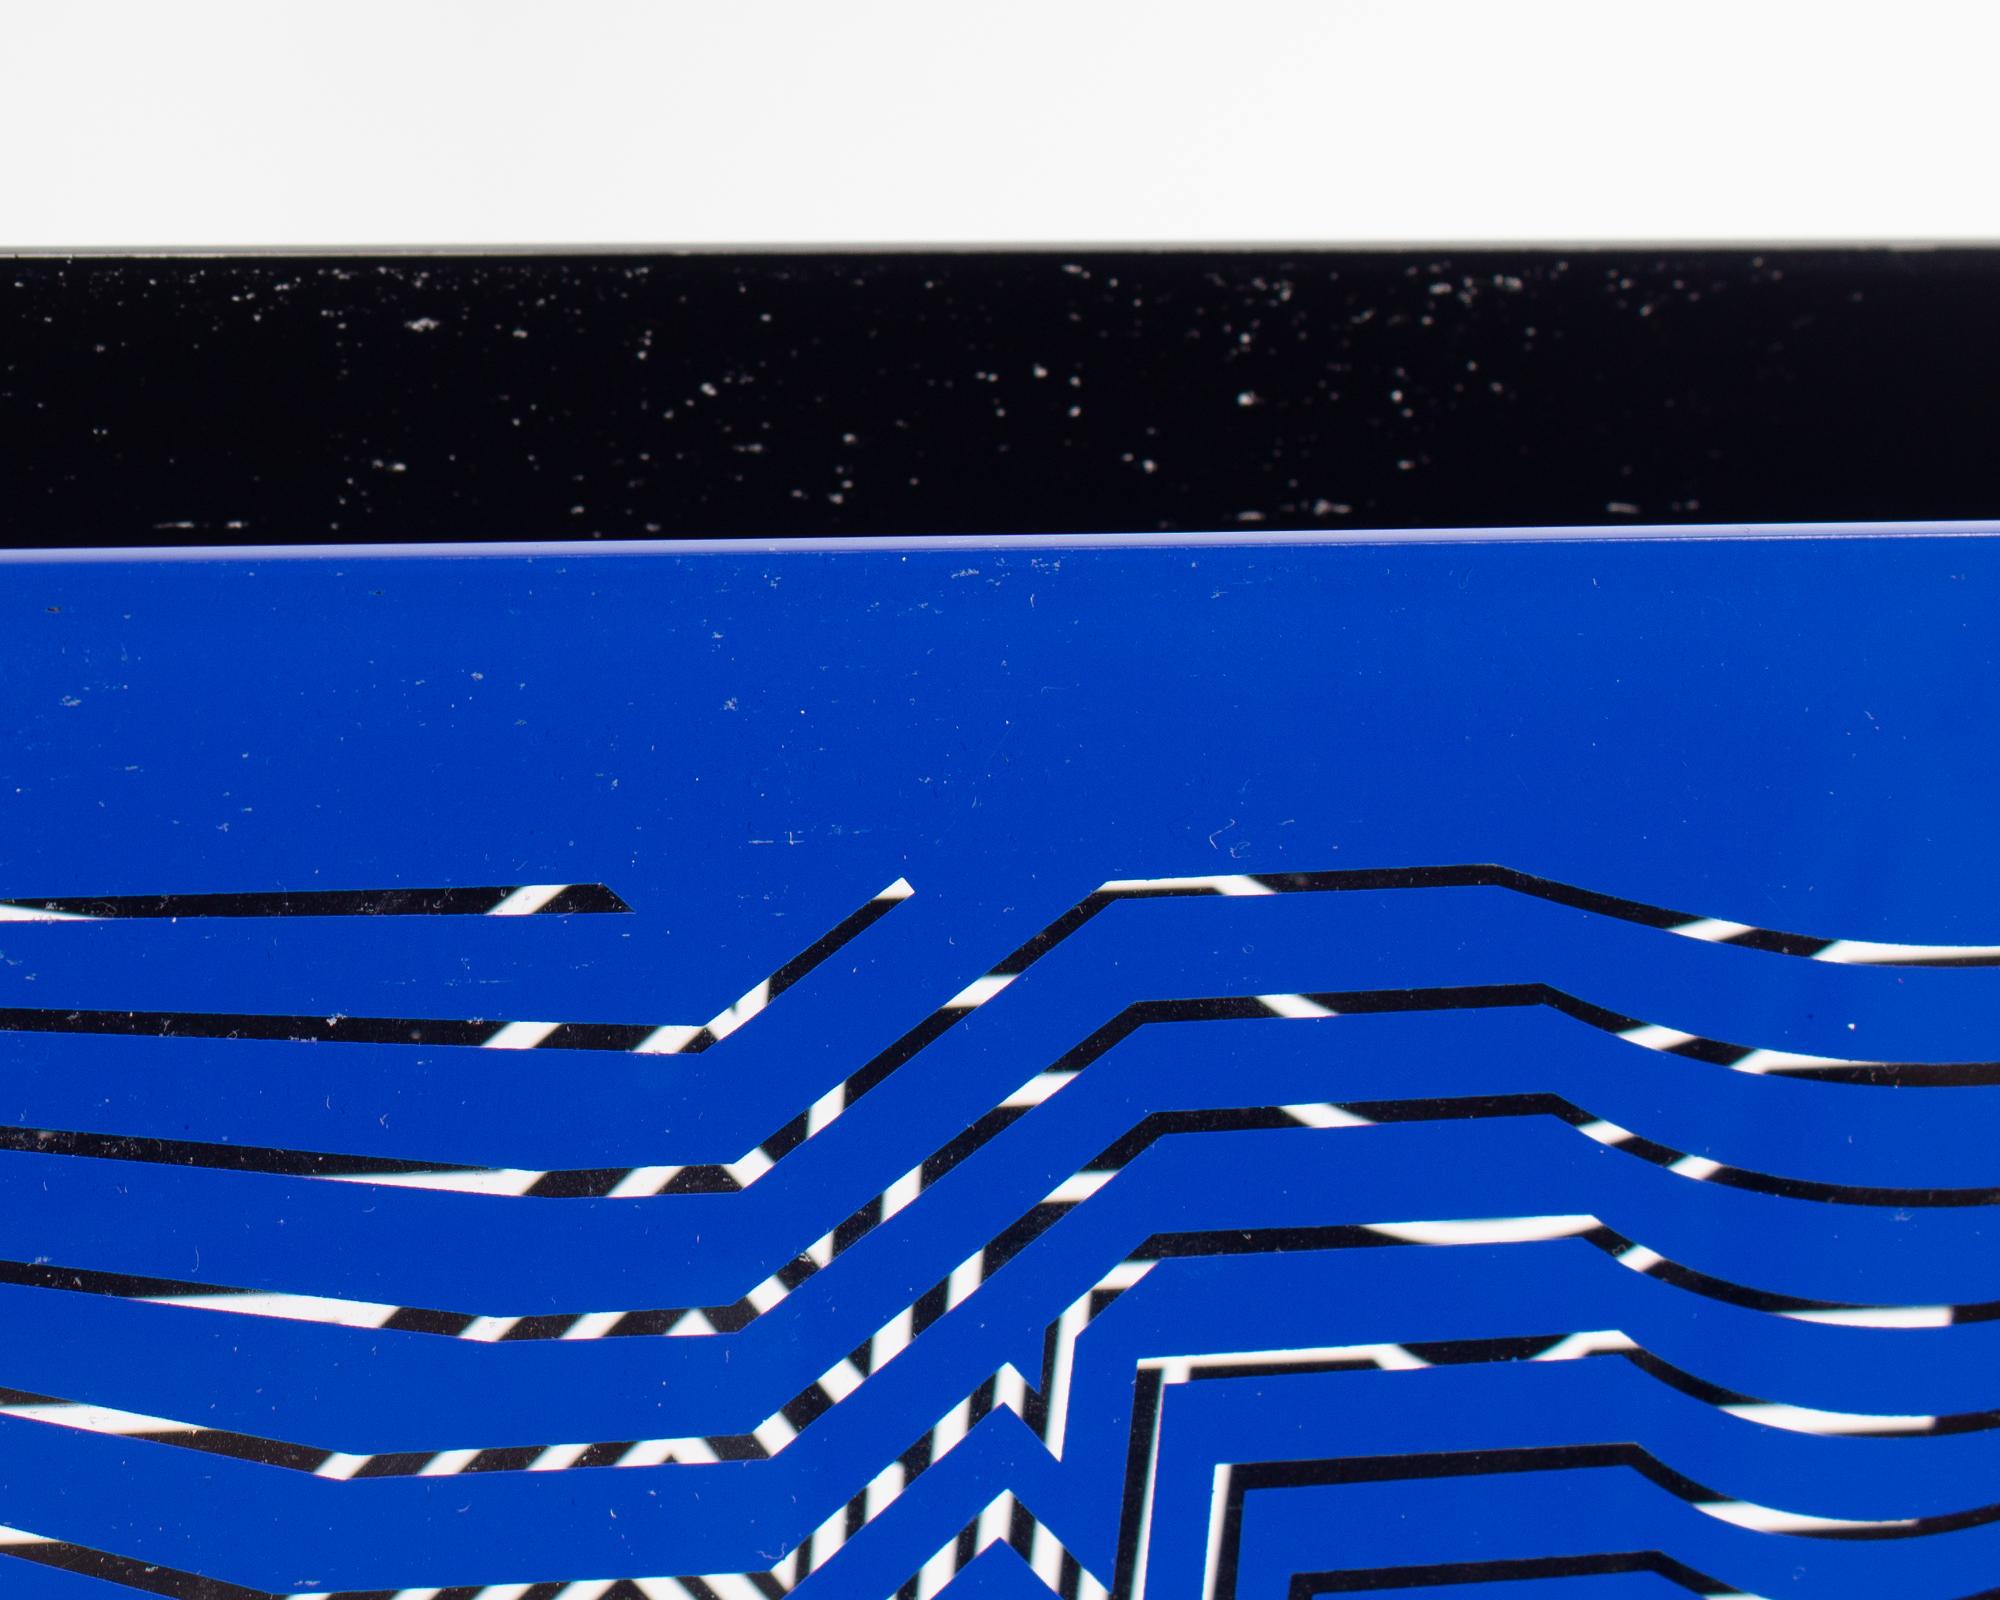 Sculpture acrylique de 1981 en édition limitée de l'artiste hongrois-français de l'Op Art Victor Vasarely (1906-1997). Cette sculpture se compose de deux panneaux acryliques ornés de motifs géométriques, l'un en bleu et l'autre en noir, reliés entre